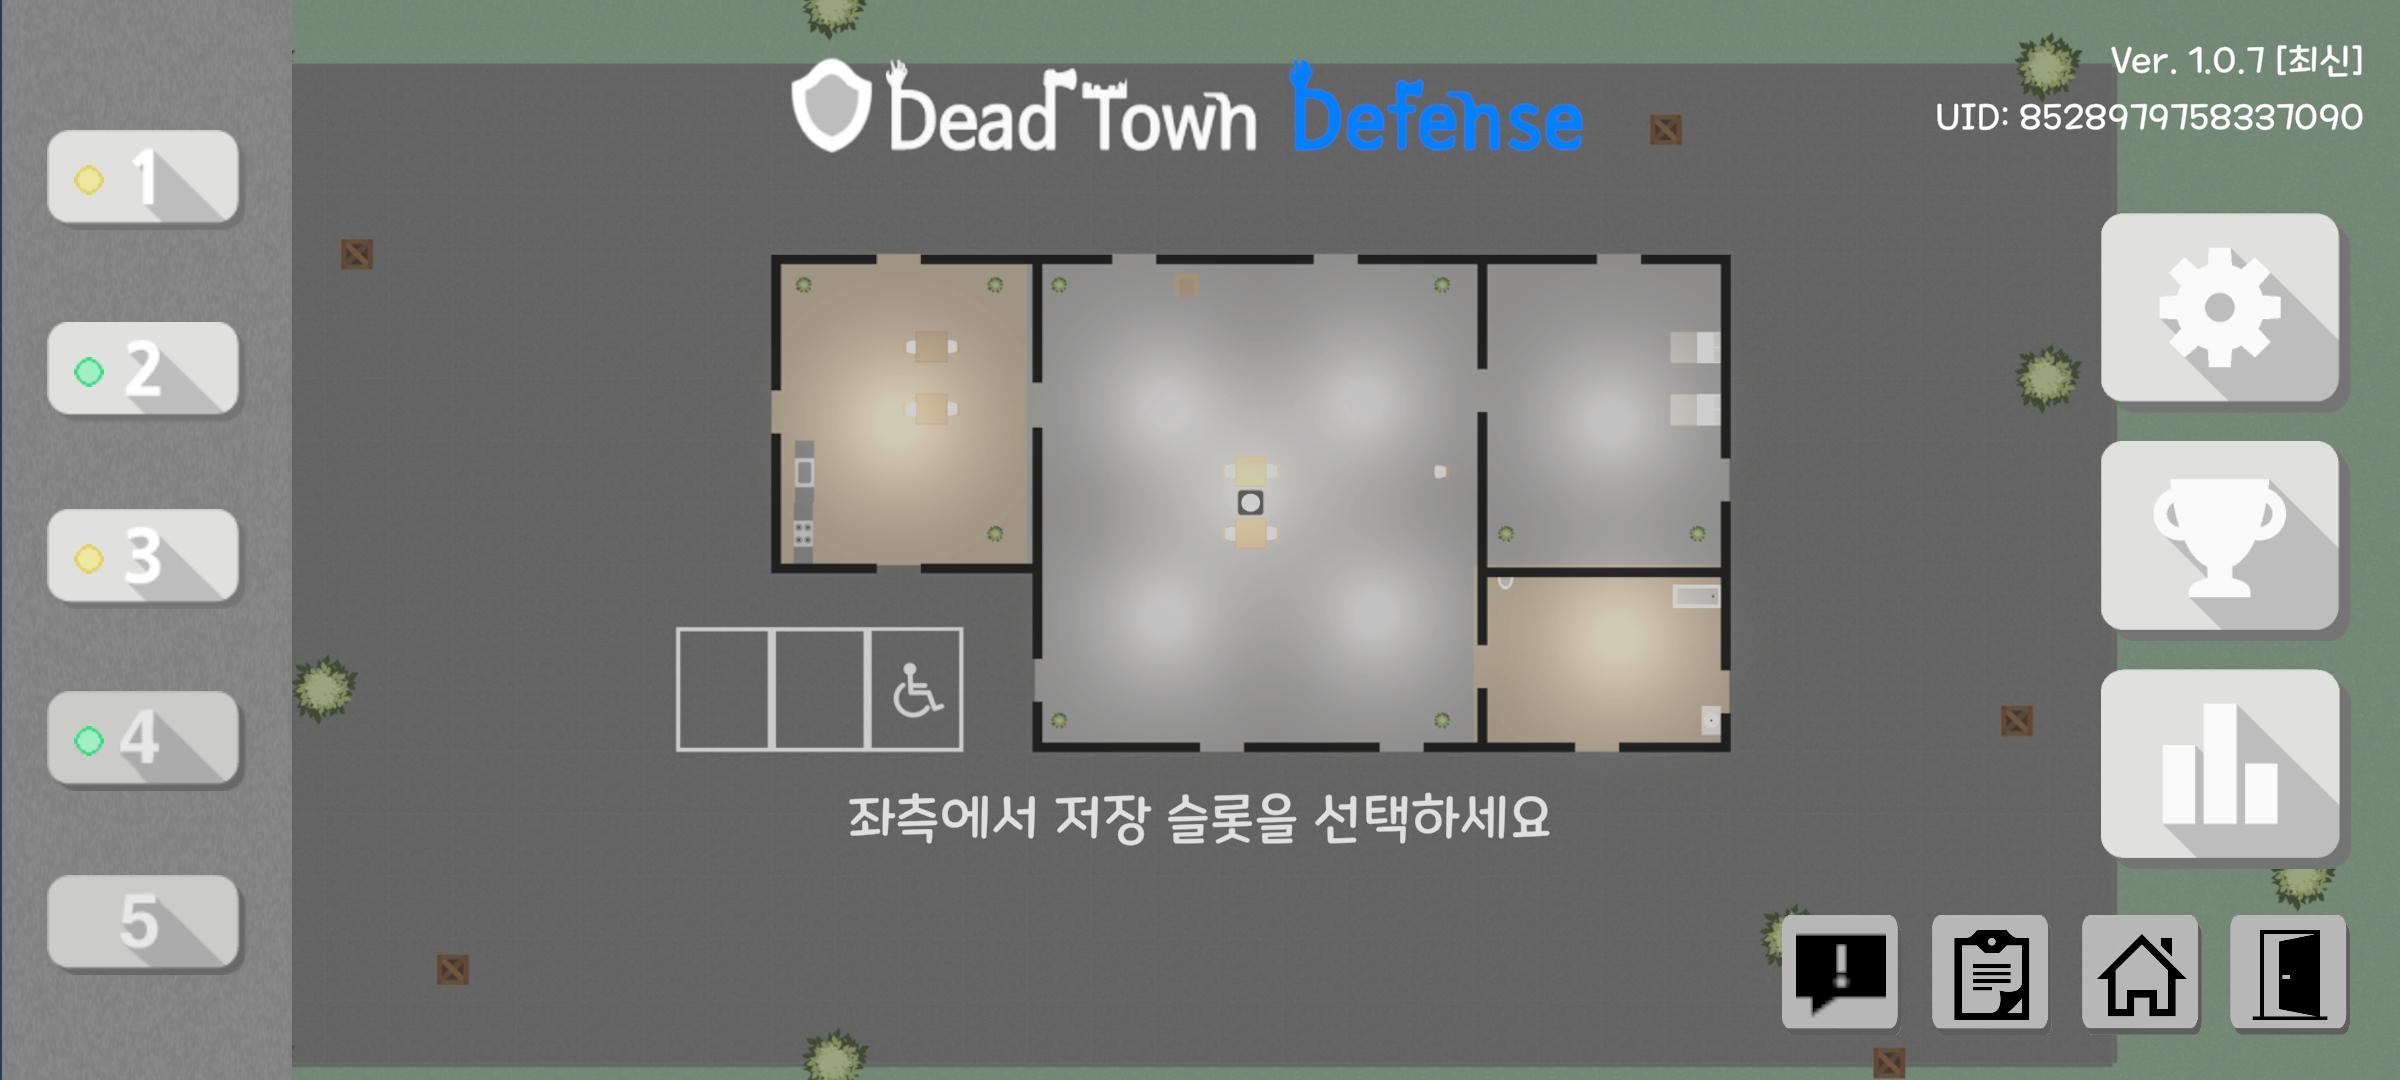 데드 타운 디펜스 [Dead Town Defense] 게임 스크린 샷